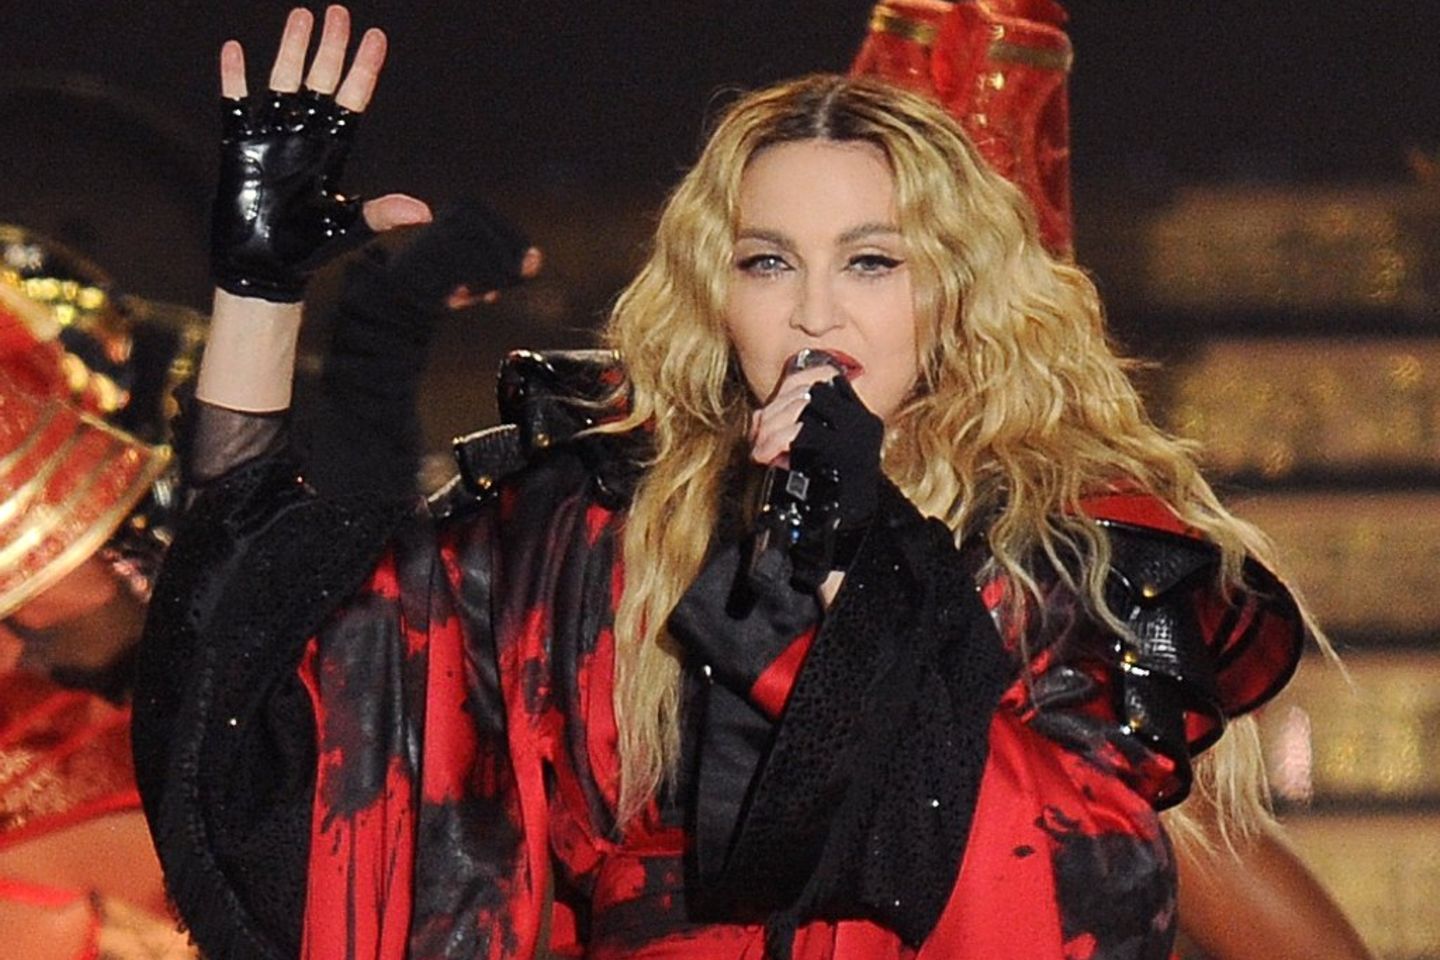 Madonna war sieben Monate lang auf "The Celebration Tour", mit der sie ihre 40-jährige Musikkarriere feierte.